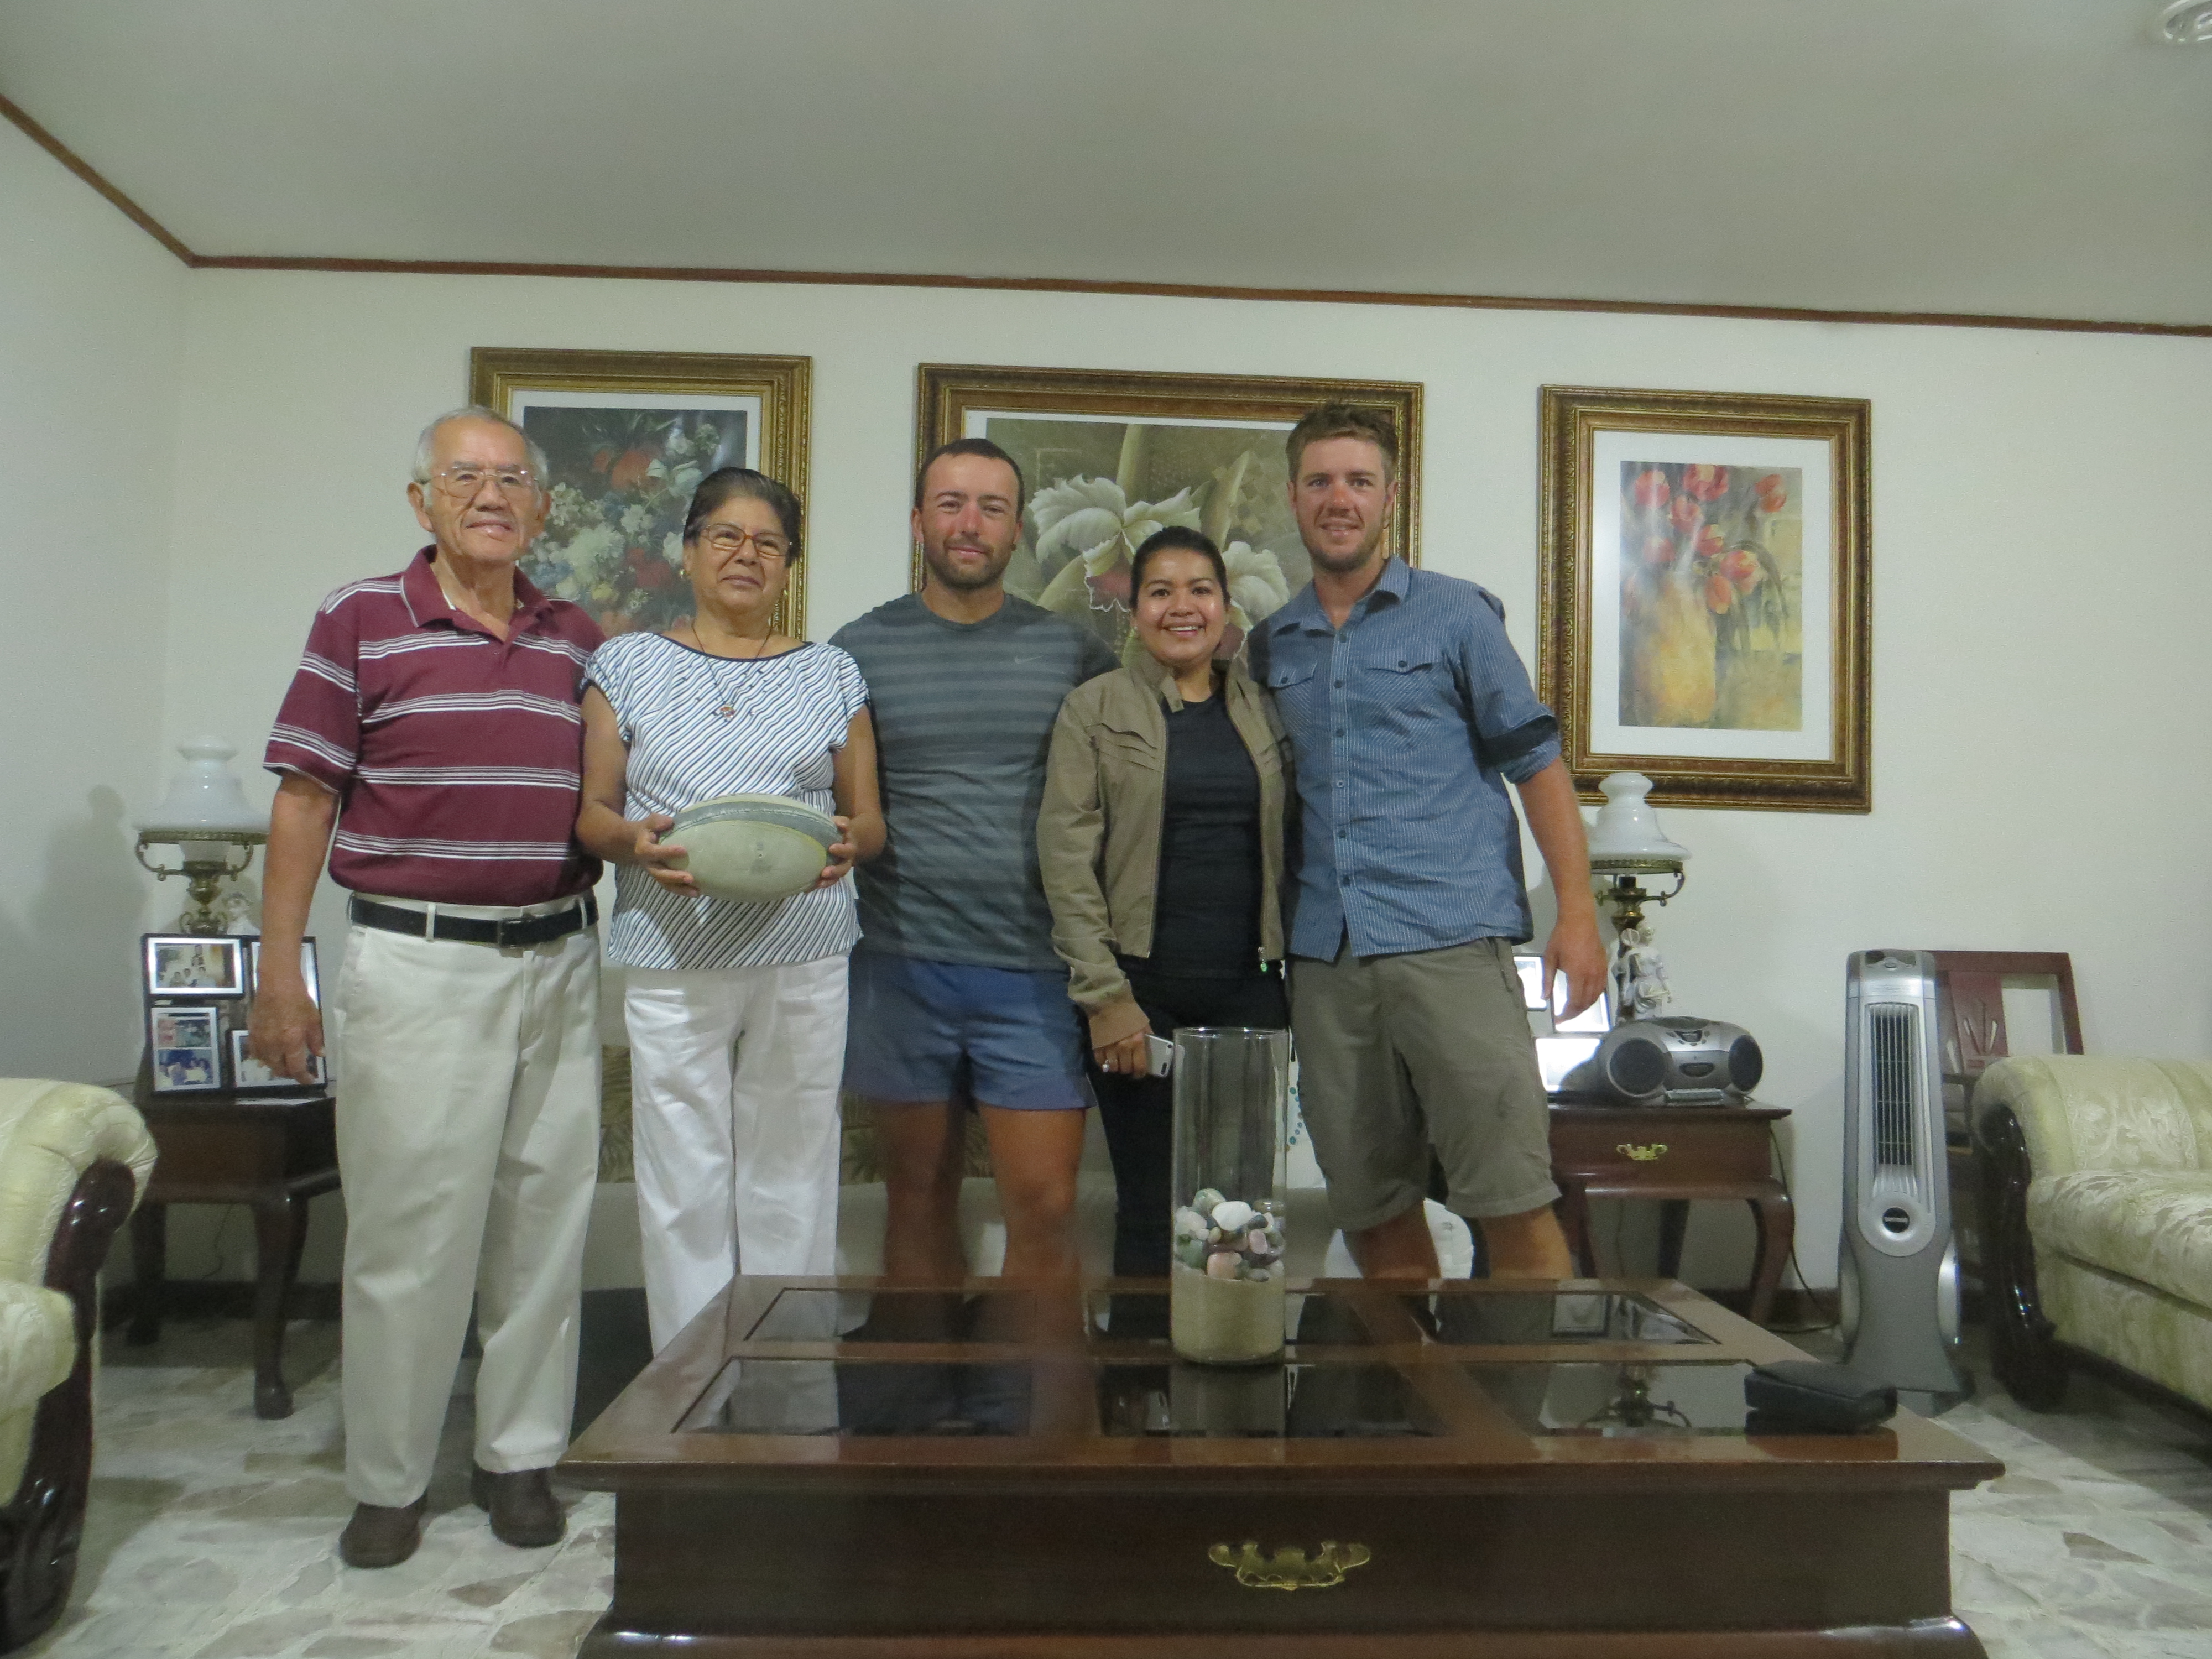 Un GRAND merci à la famille Marbuen pour leur accueil inoubliable à Tepic.